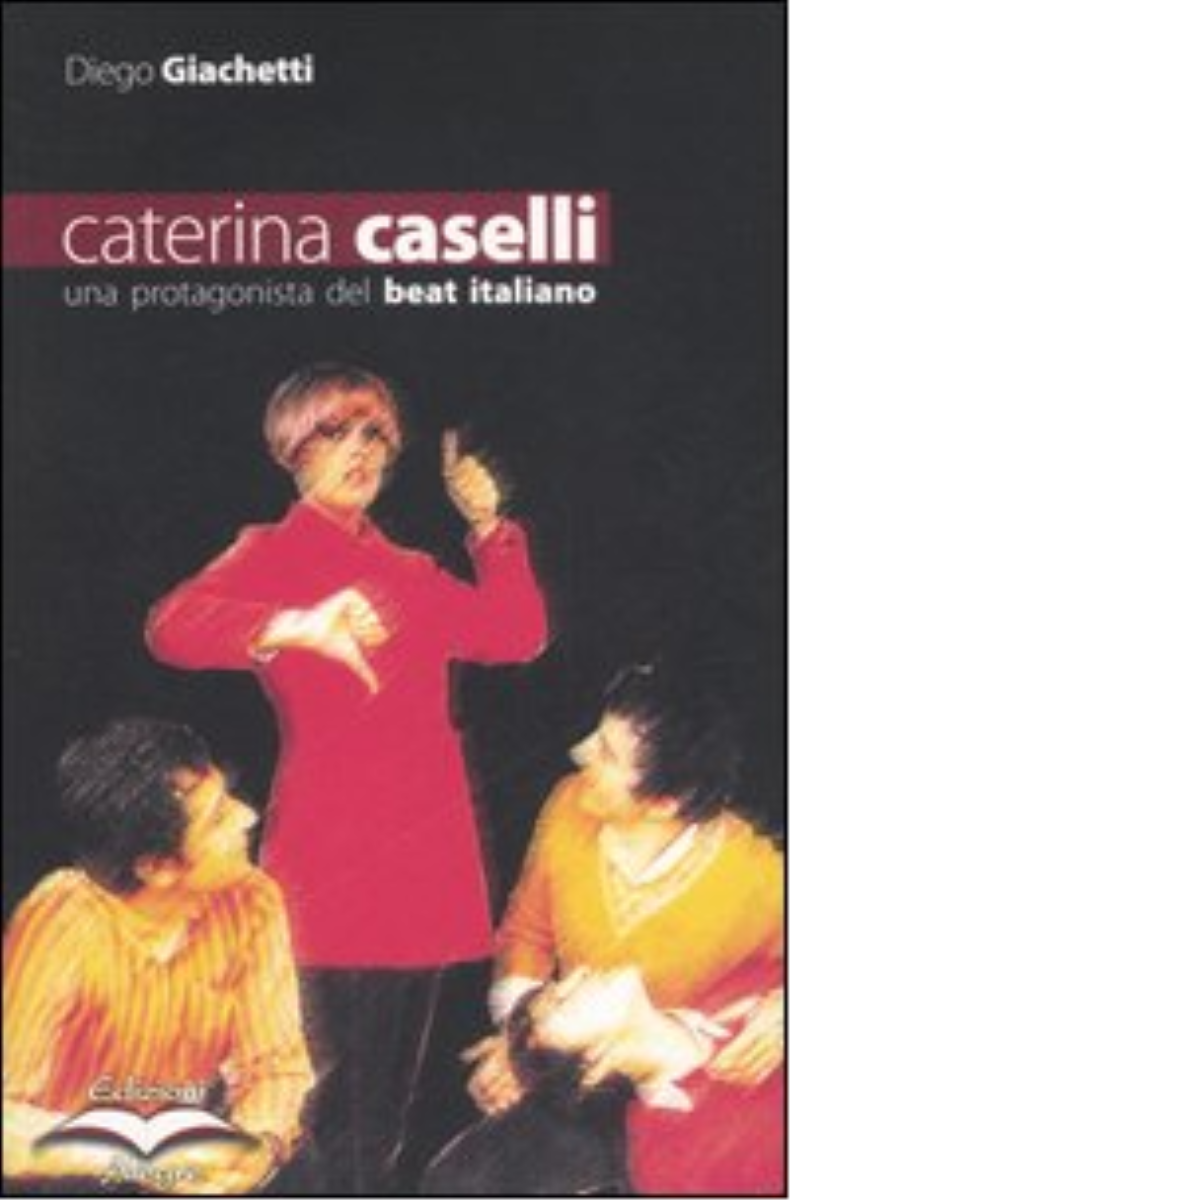 CATERINA CASELLI di DIEGO GIACHETTI - edizioni alegre, 2005